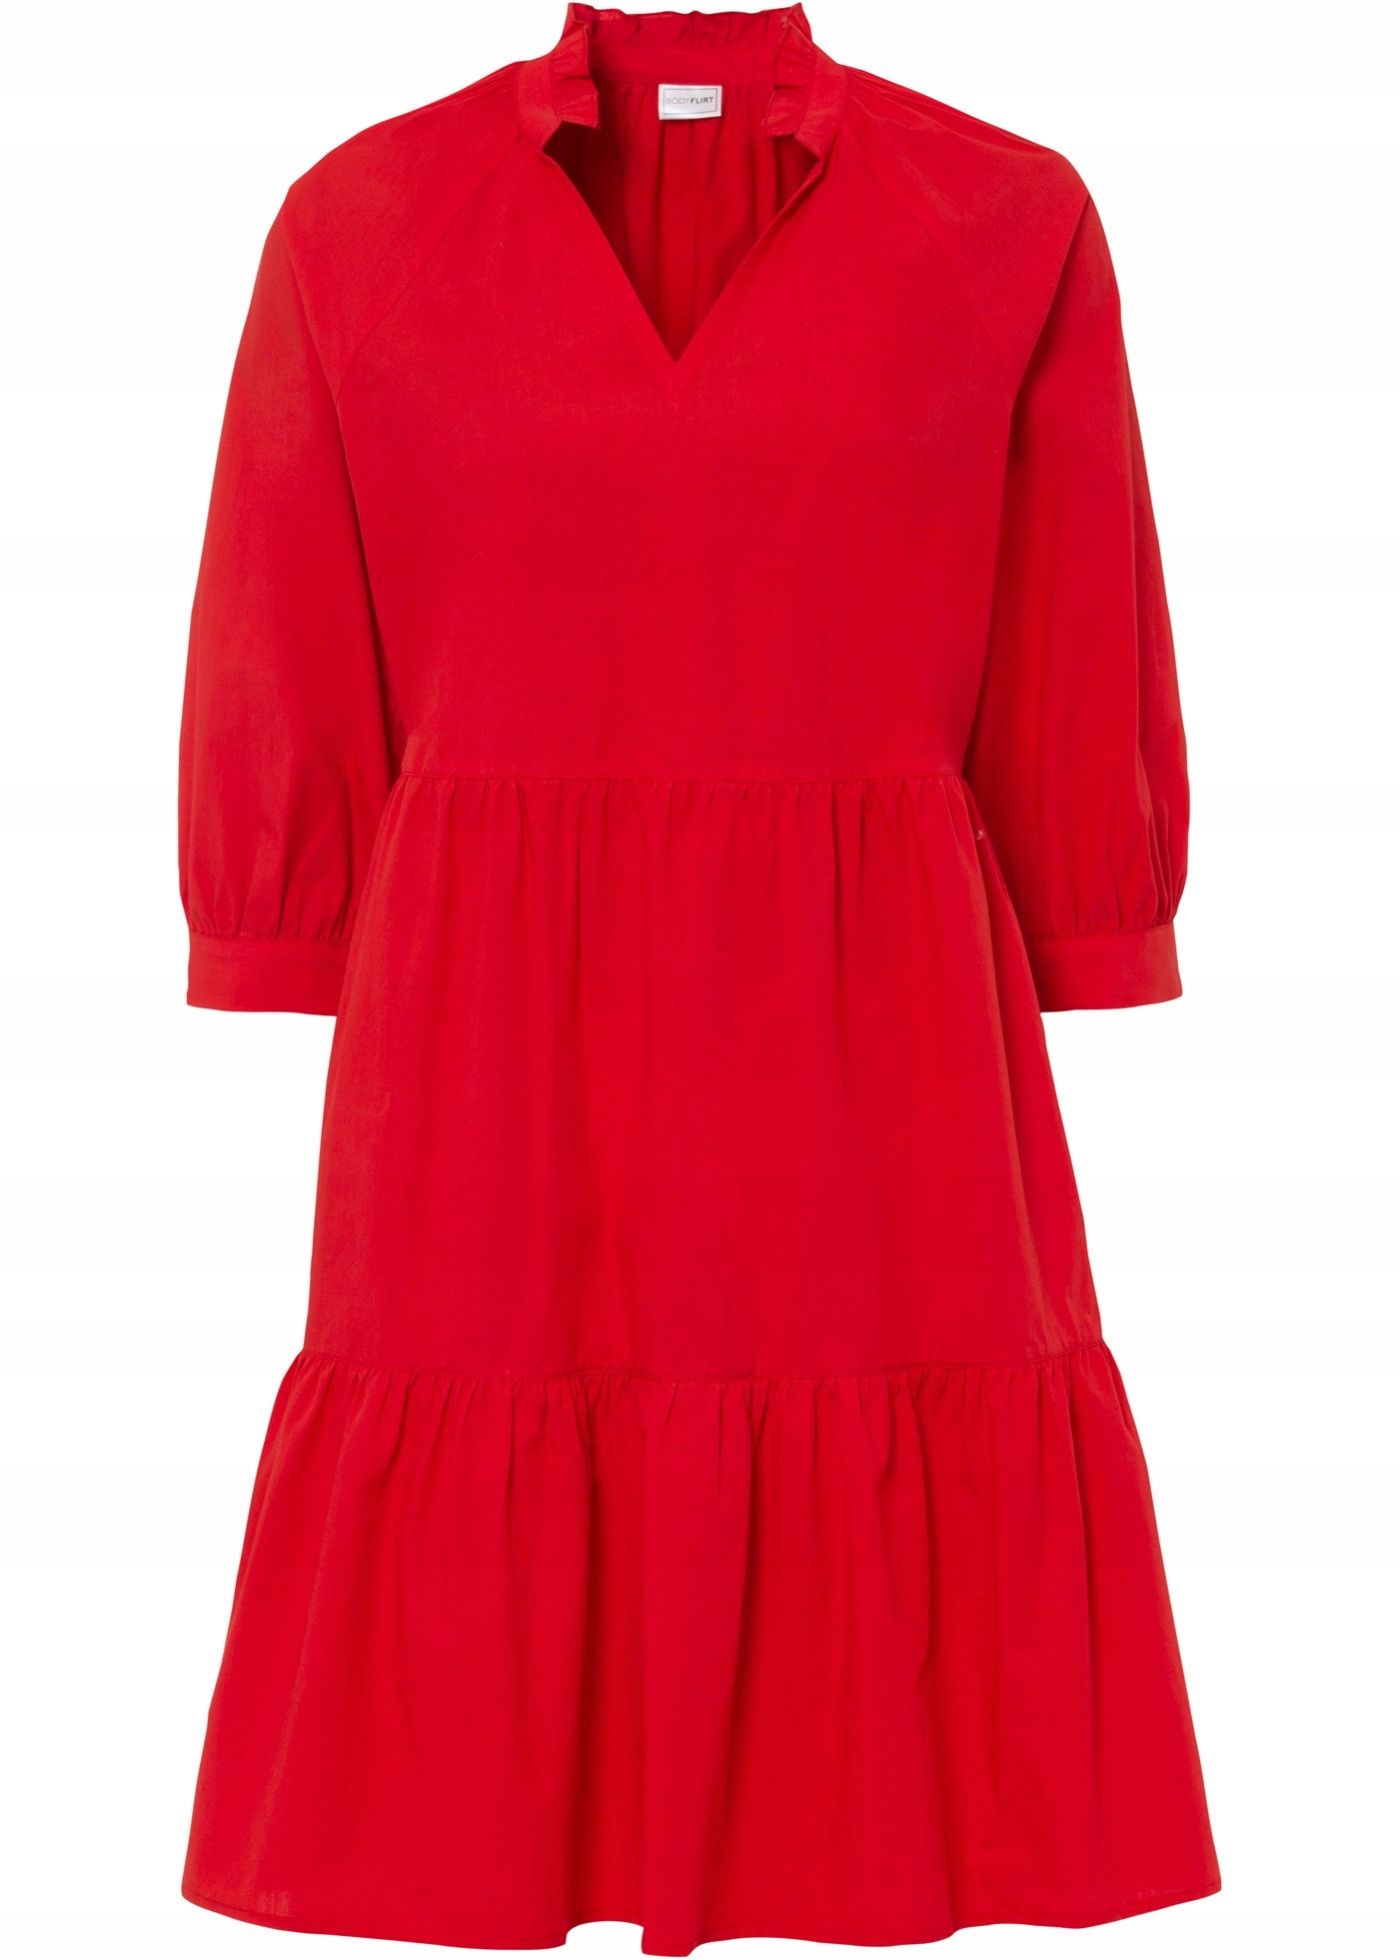 B.P.C sukienka czerwona ze stójką falbany 40.